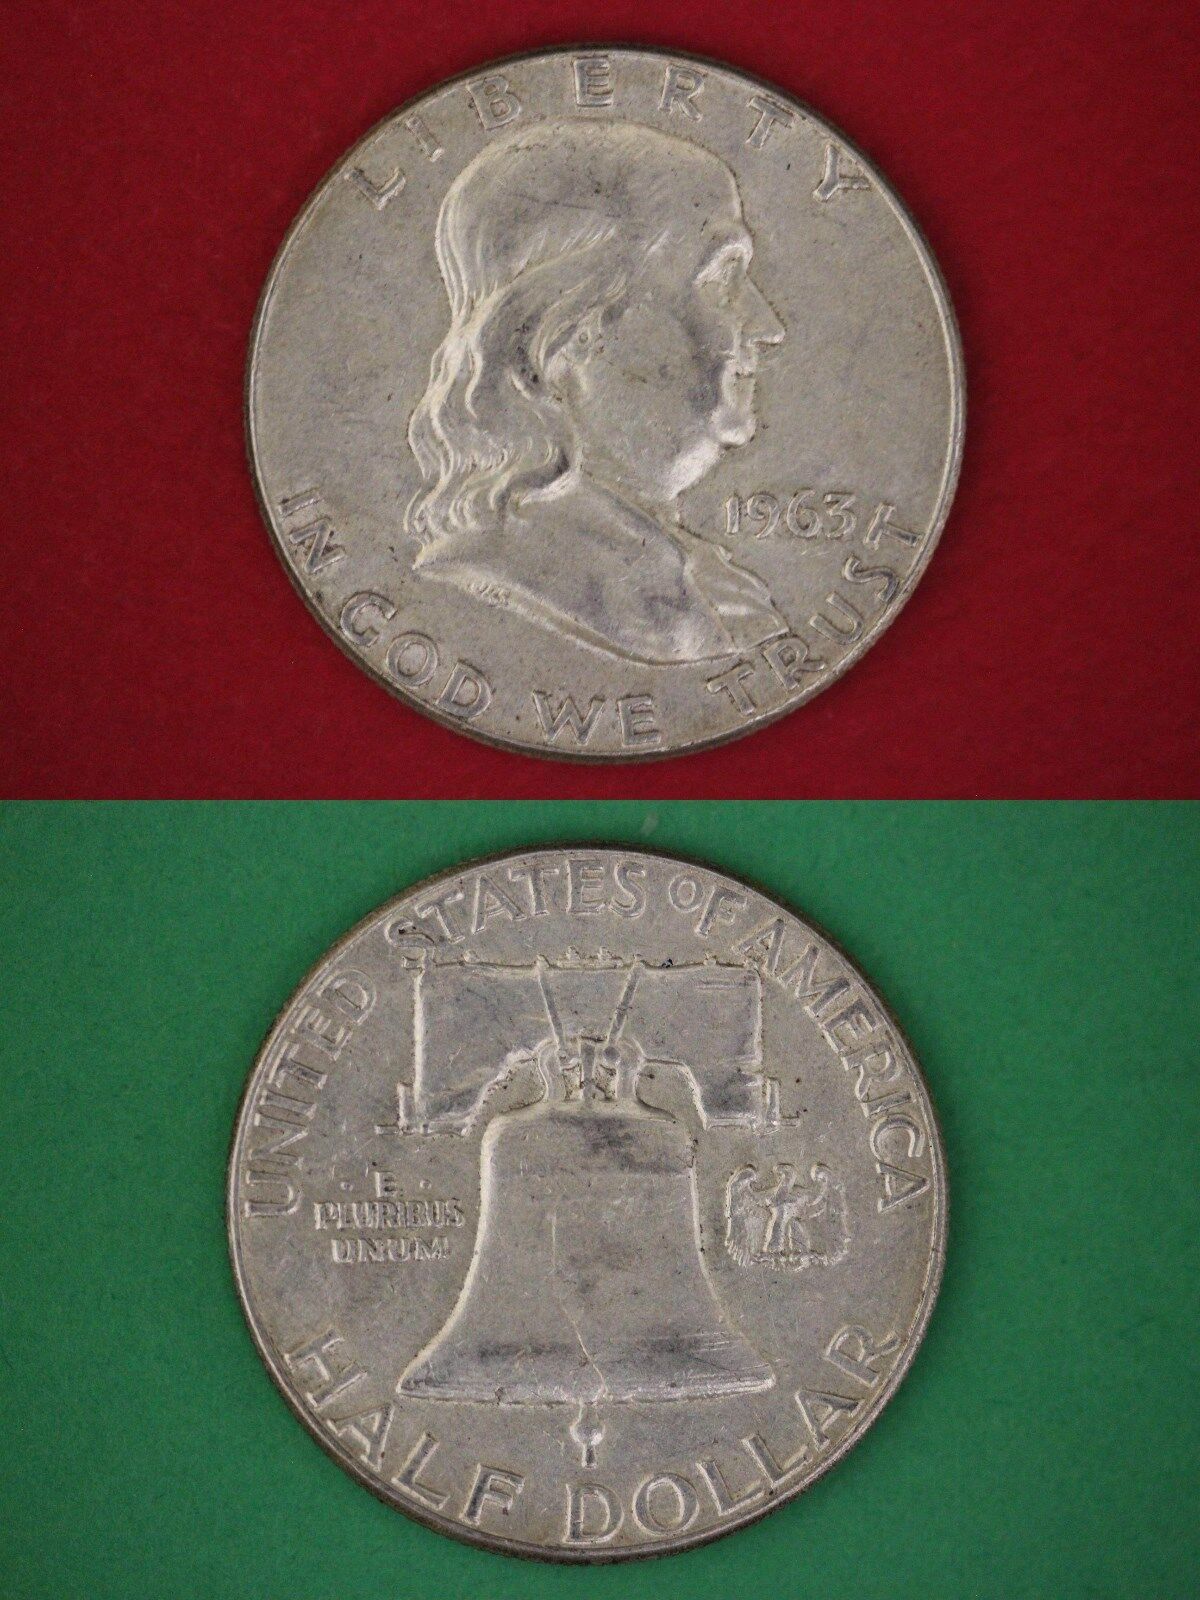 MAKE OFFER $1.00 Face Value Ben Franklin Half Dollars Halves Junk Silver Coins